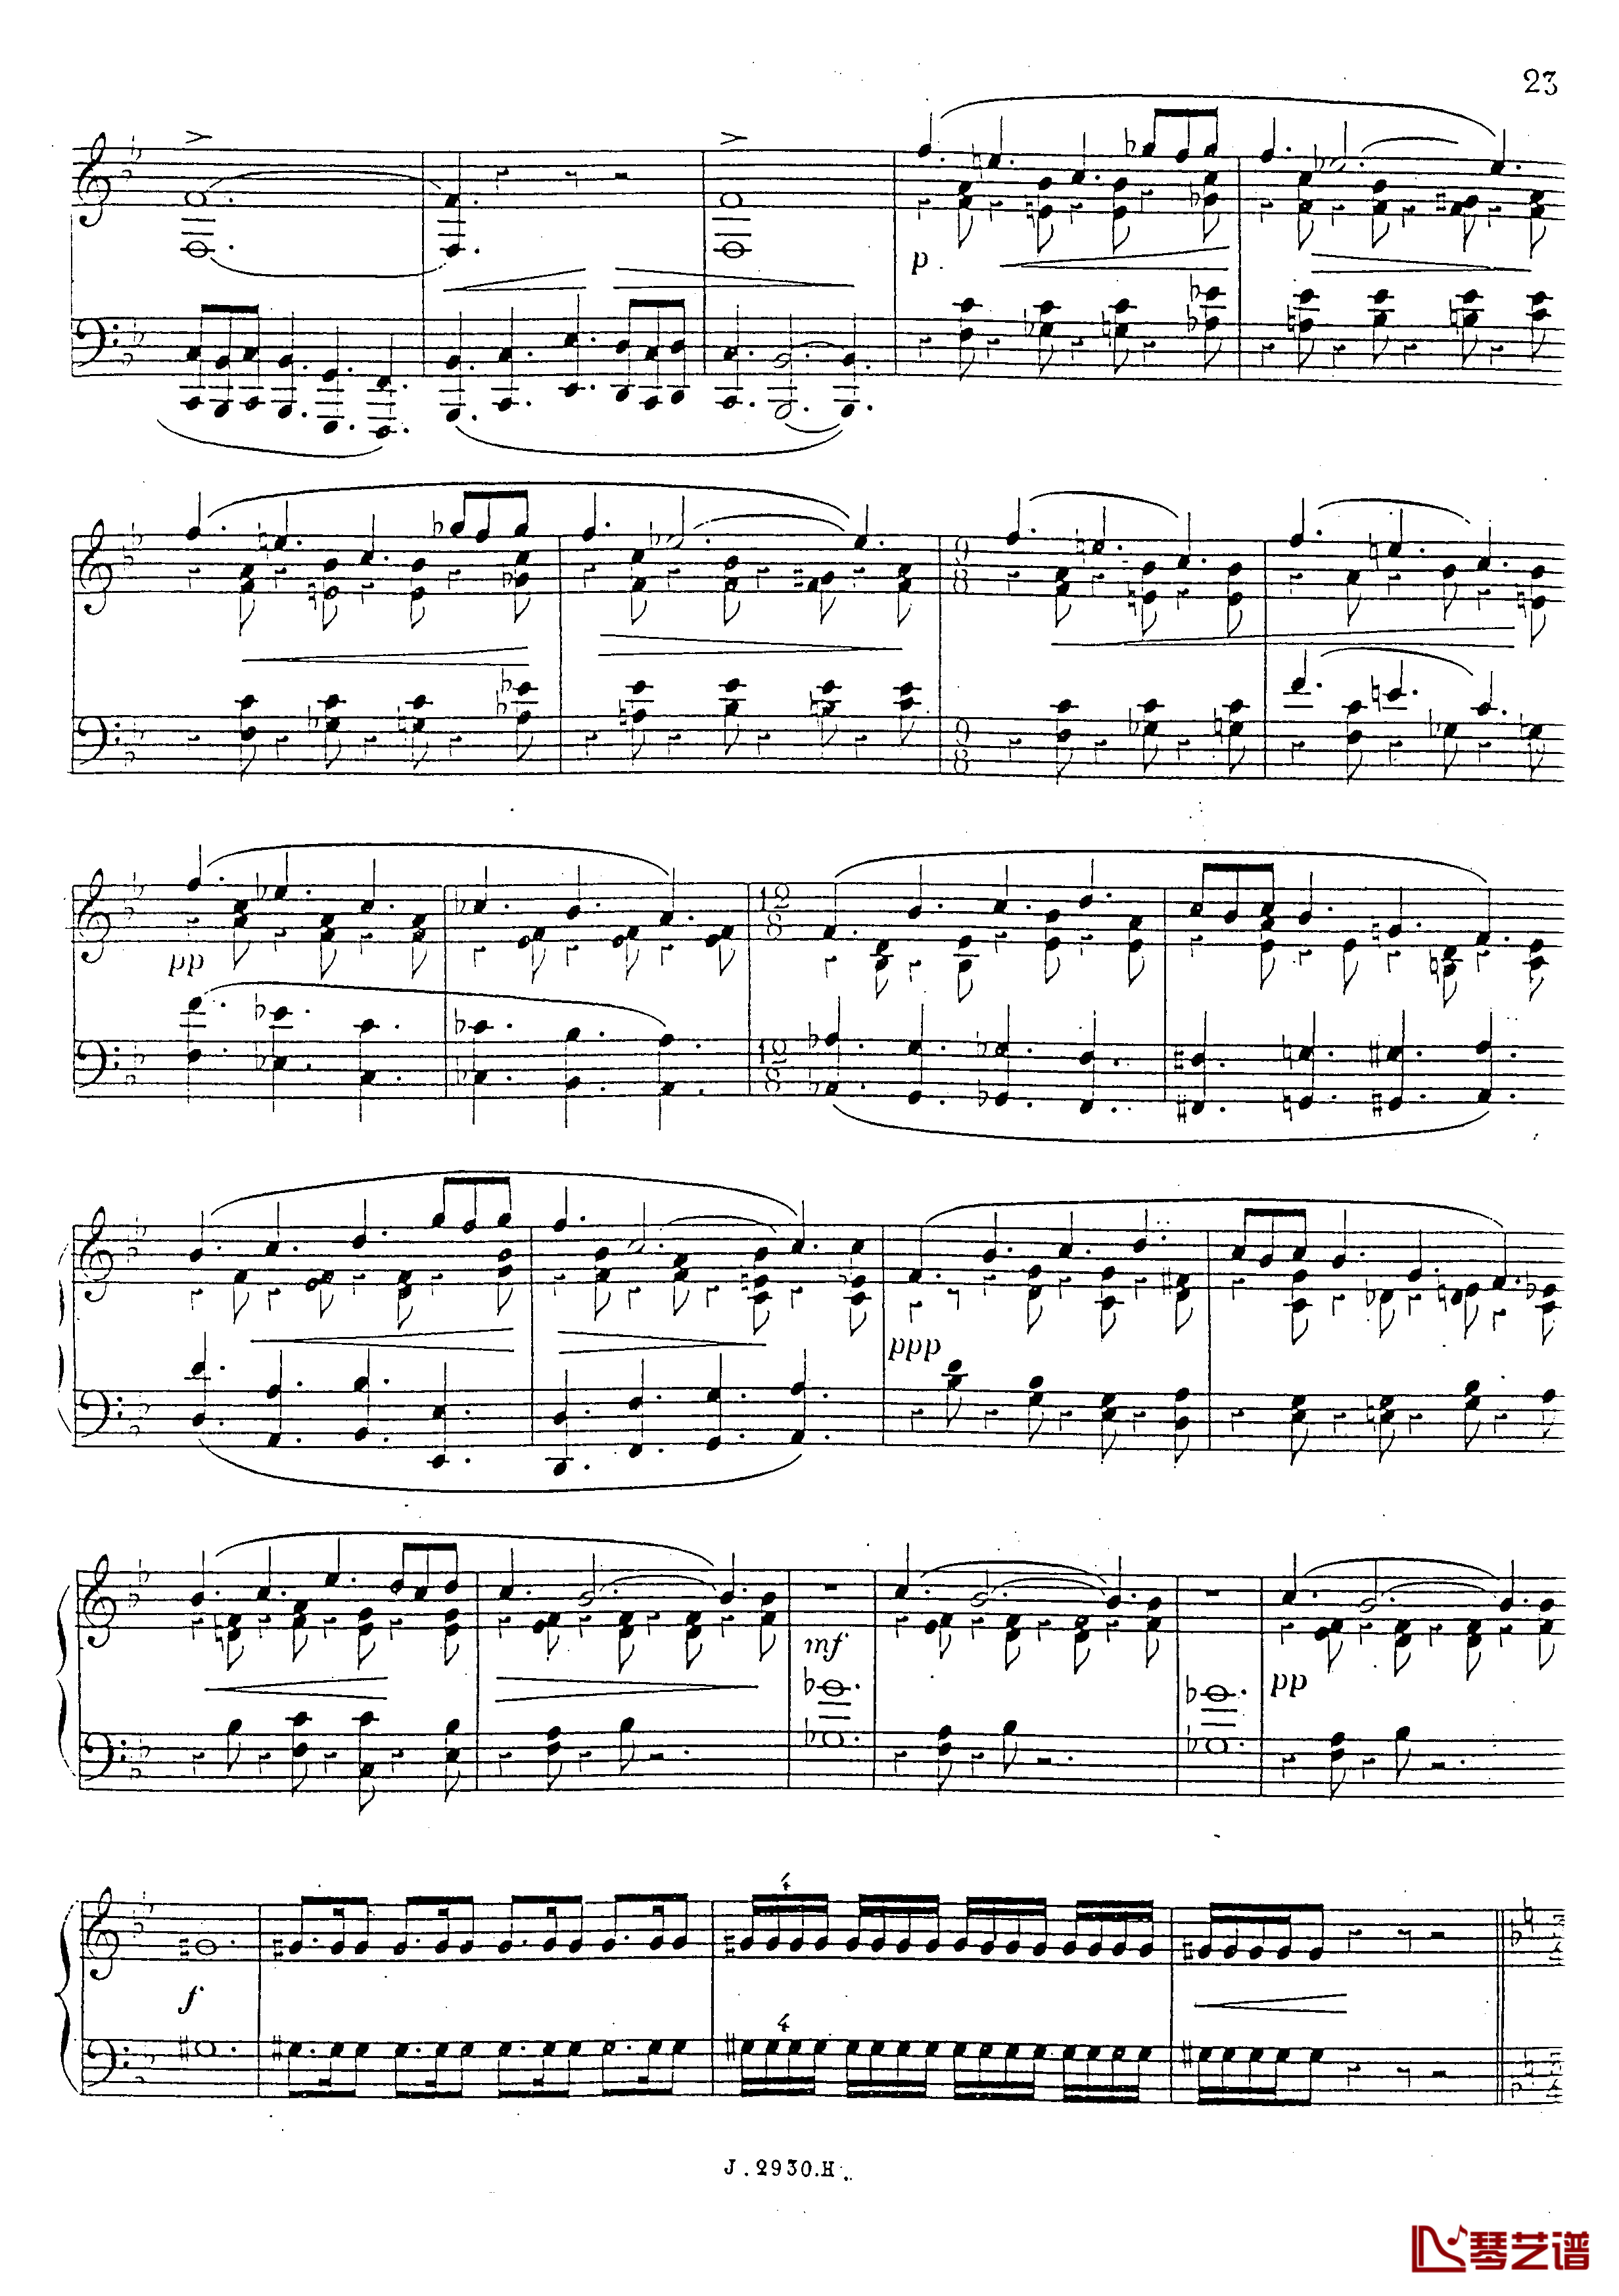 a小调第四钢琴奏鸣曲钢琴谱-安东 鲁宾斯坦- Op.10024